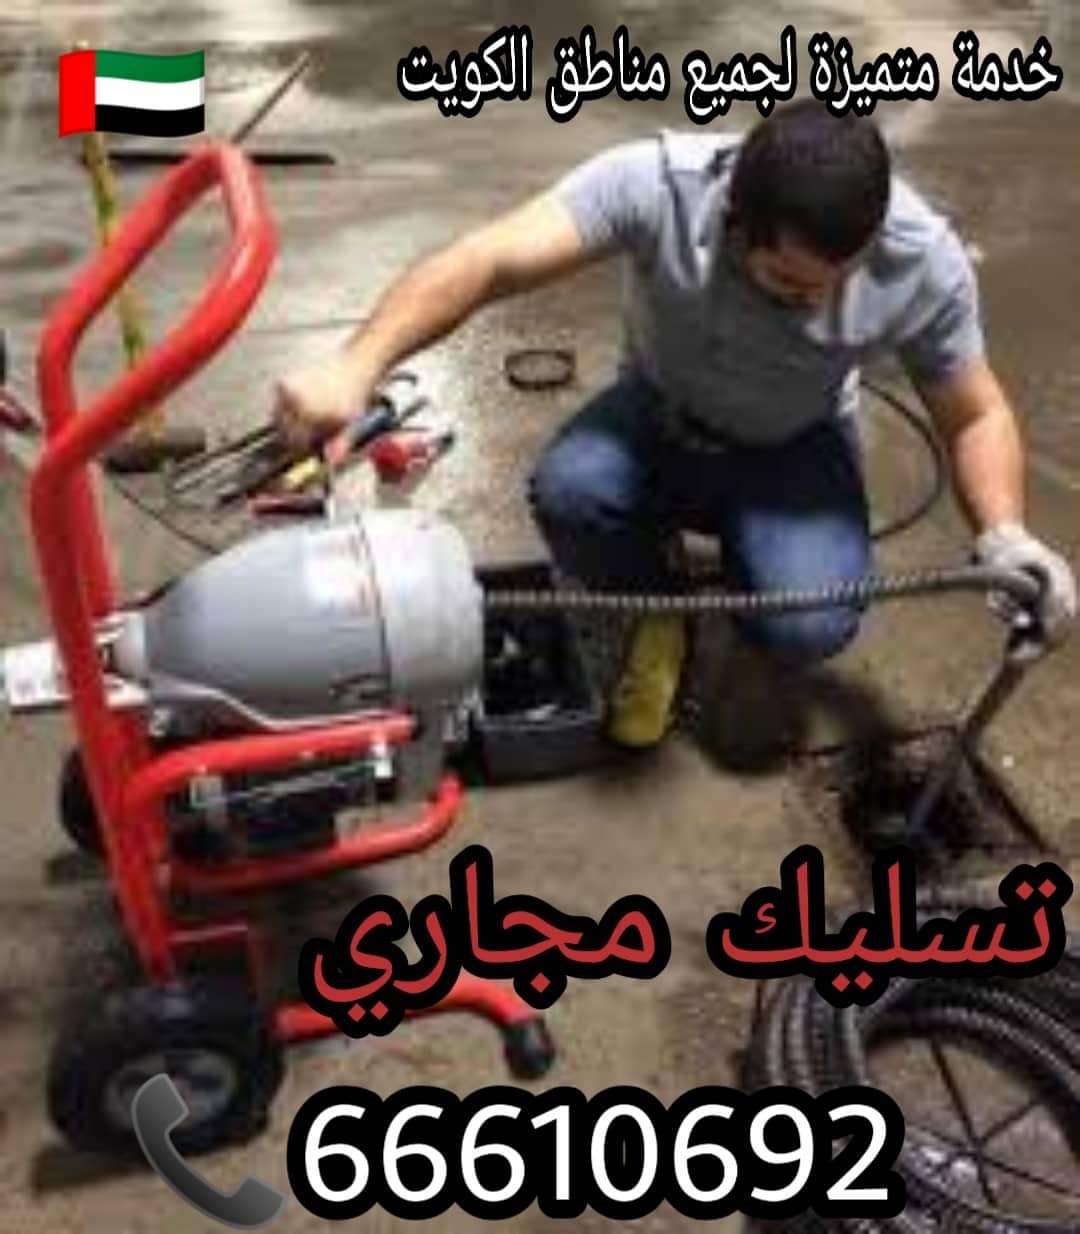 تسليك مجاري النزهة / 66610692 / صيانة وتركيب ادوات صحية بالكويت